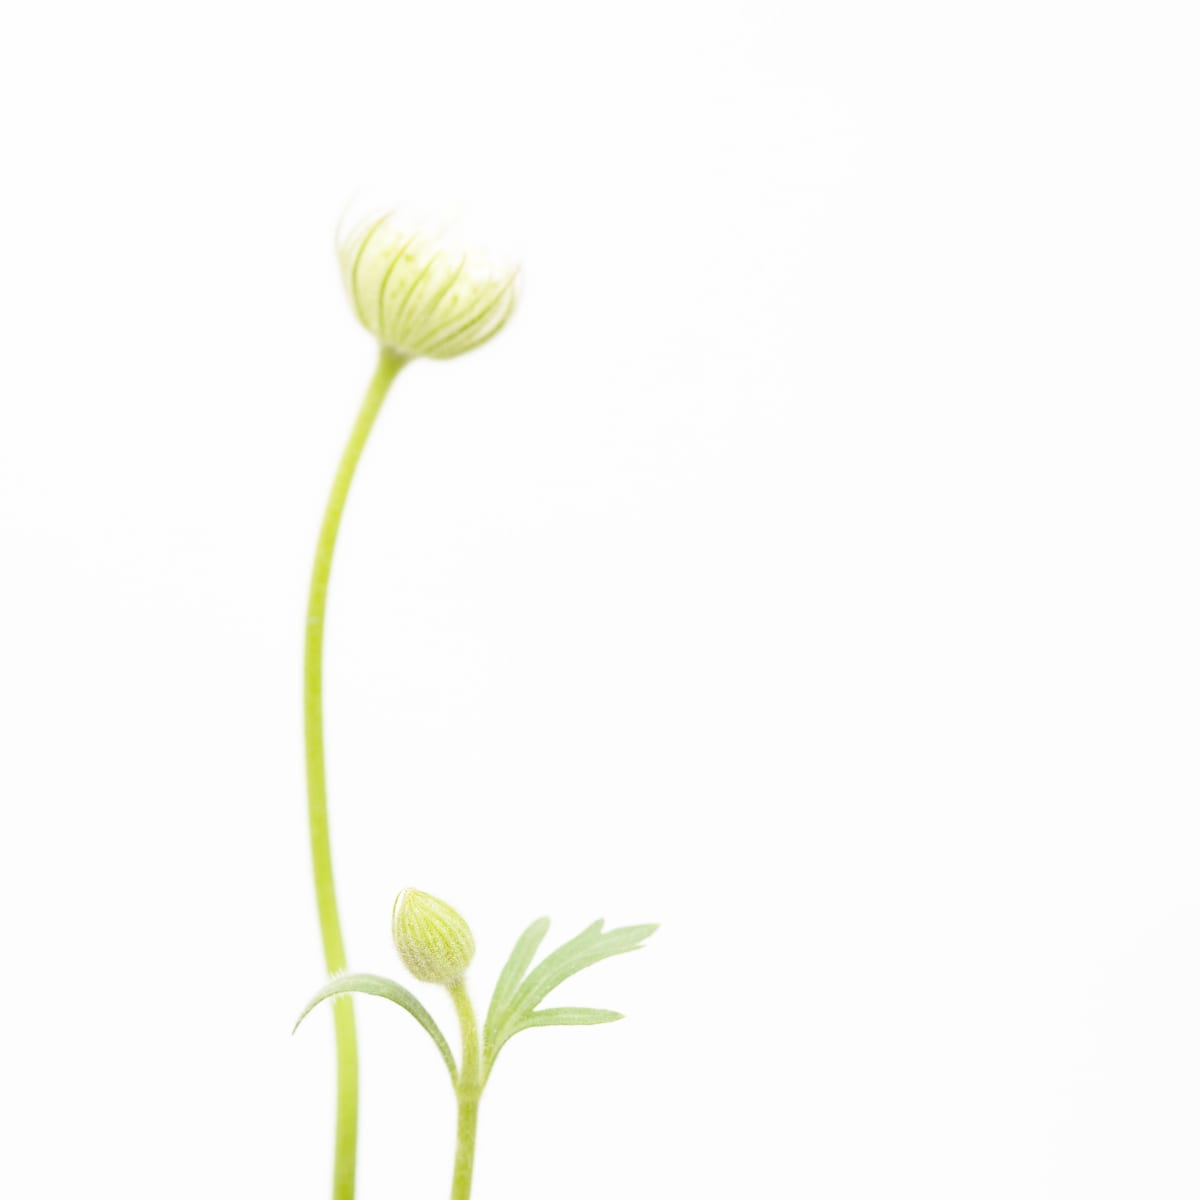 風輪花 一 Pincushion Flower 1 From The Collection Of Donna Art Artwork Archive